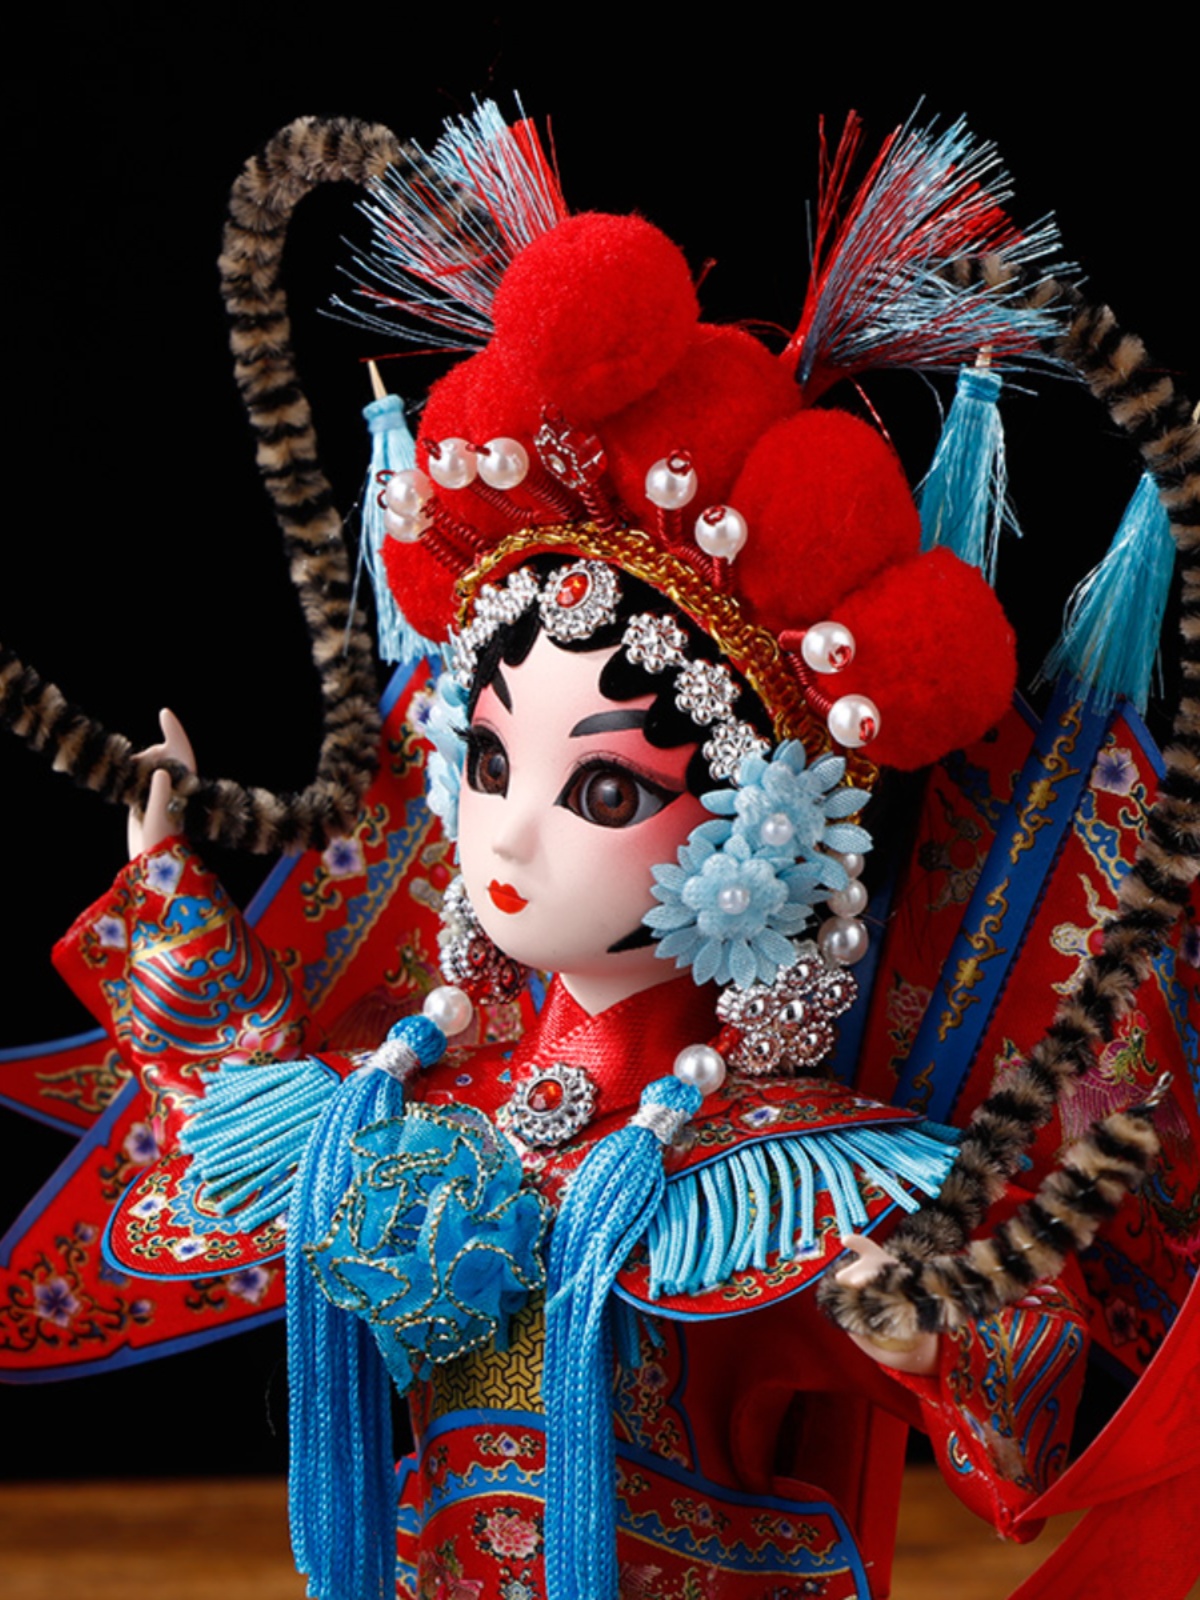 中国风北京绢人 特色手工艺京剧玩偶摆件送老外小礼物品京味娃娃